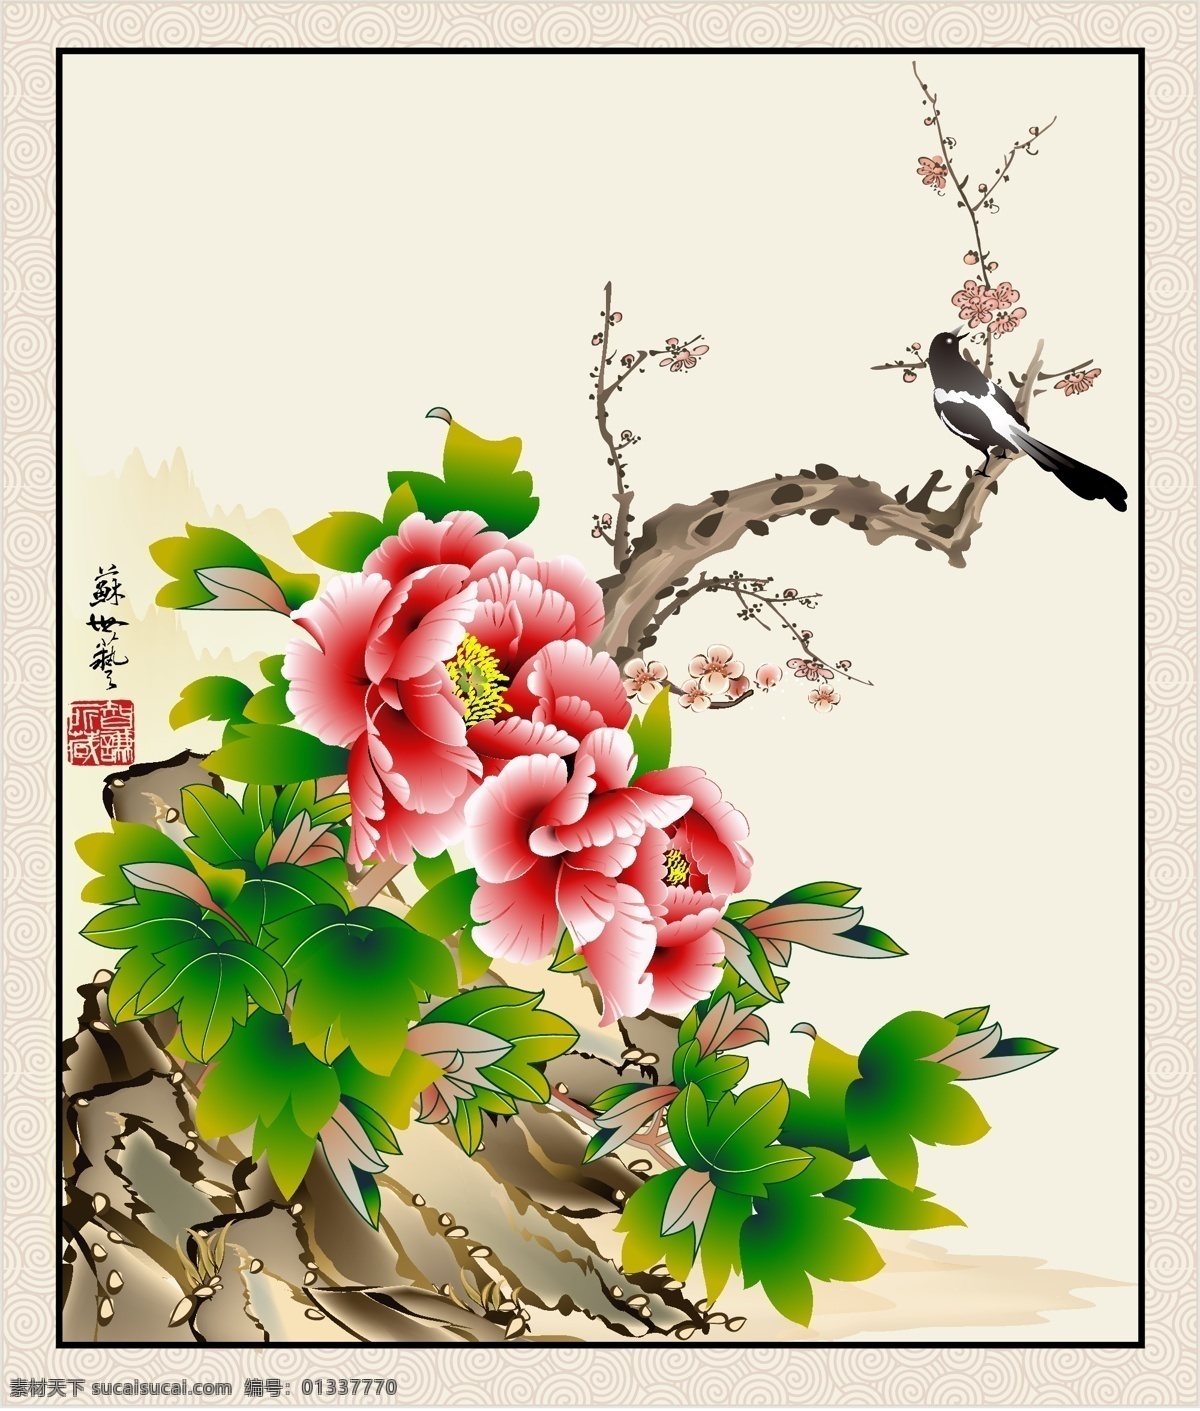 款 中国 风格 花鸟 工笔画 花卉 花鸟图 绿叶 模板 牡丹 设计稿 文化艺术 中国风 喜鹊 源文件 矢量图